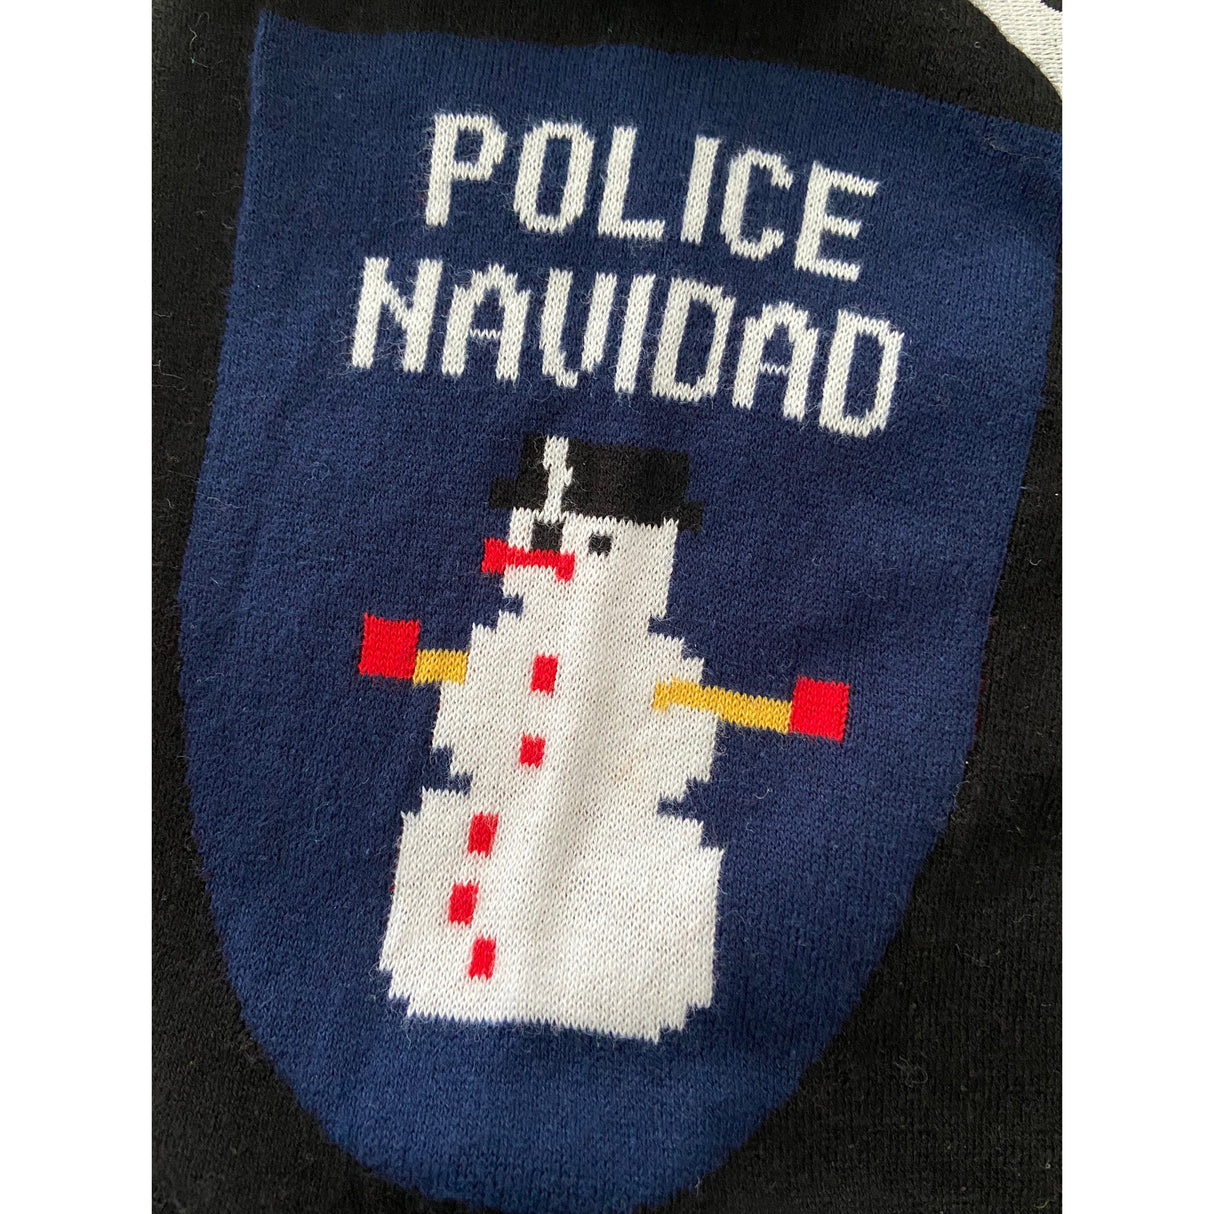 Police Uniform Xmas Sweater